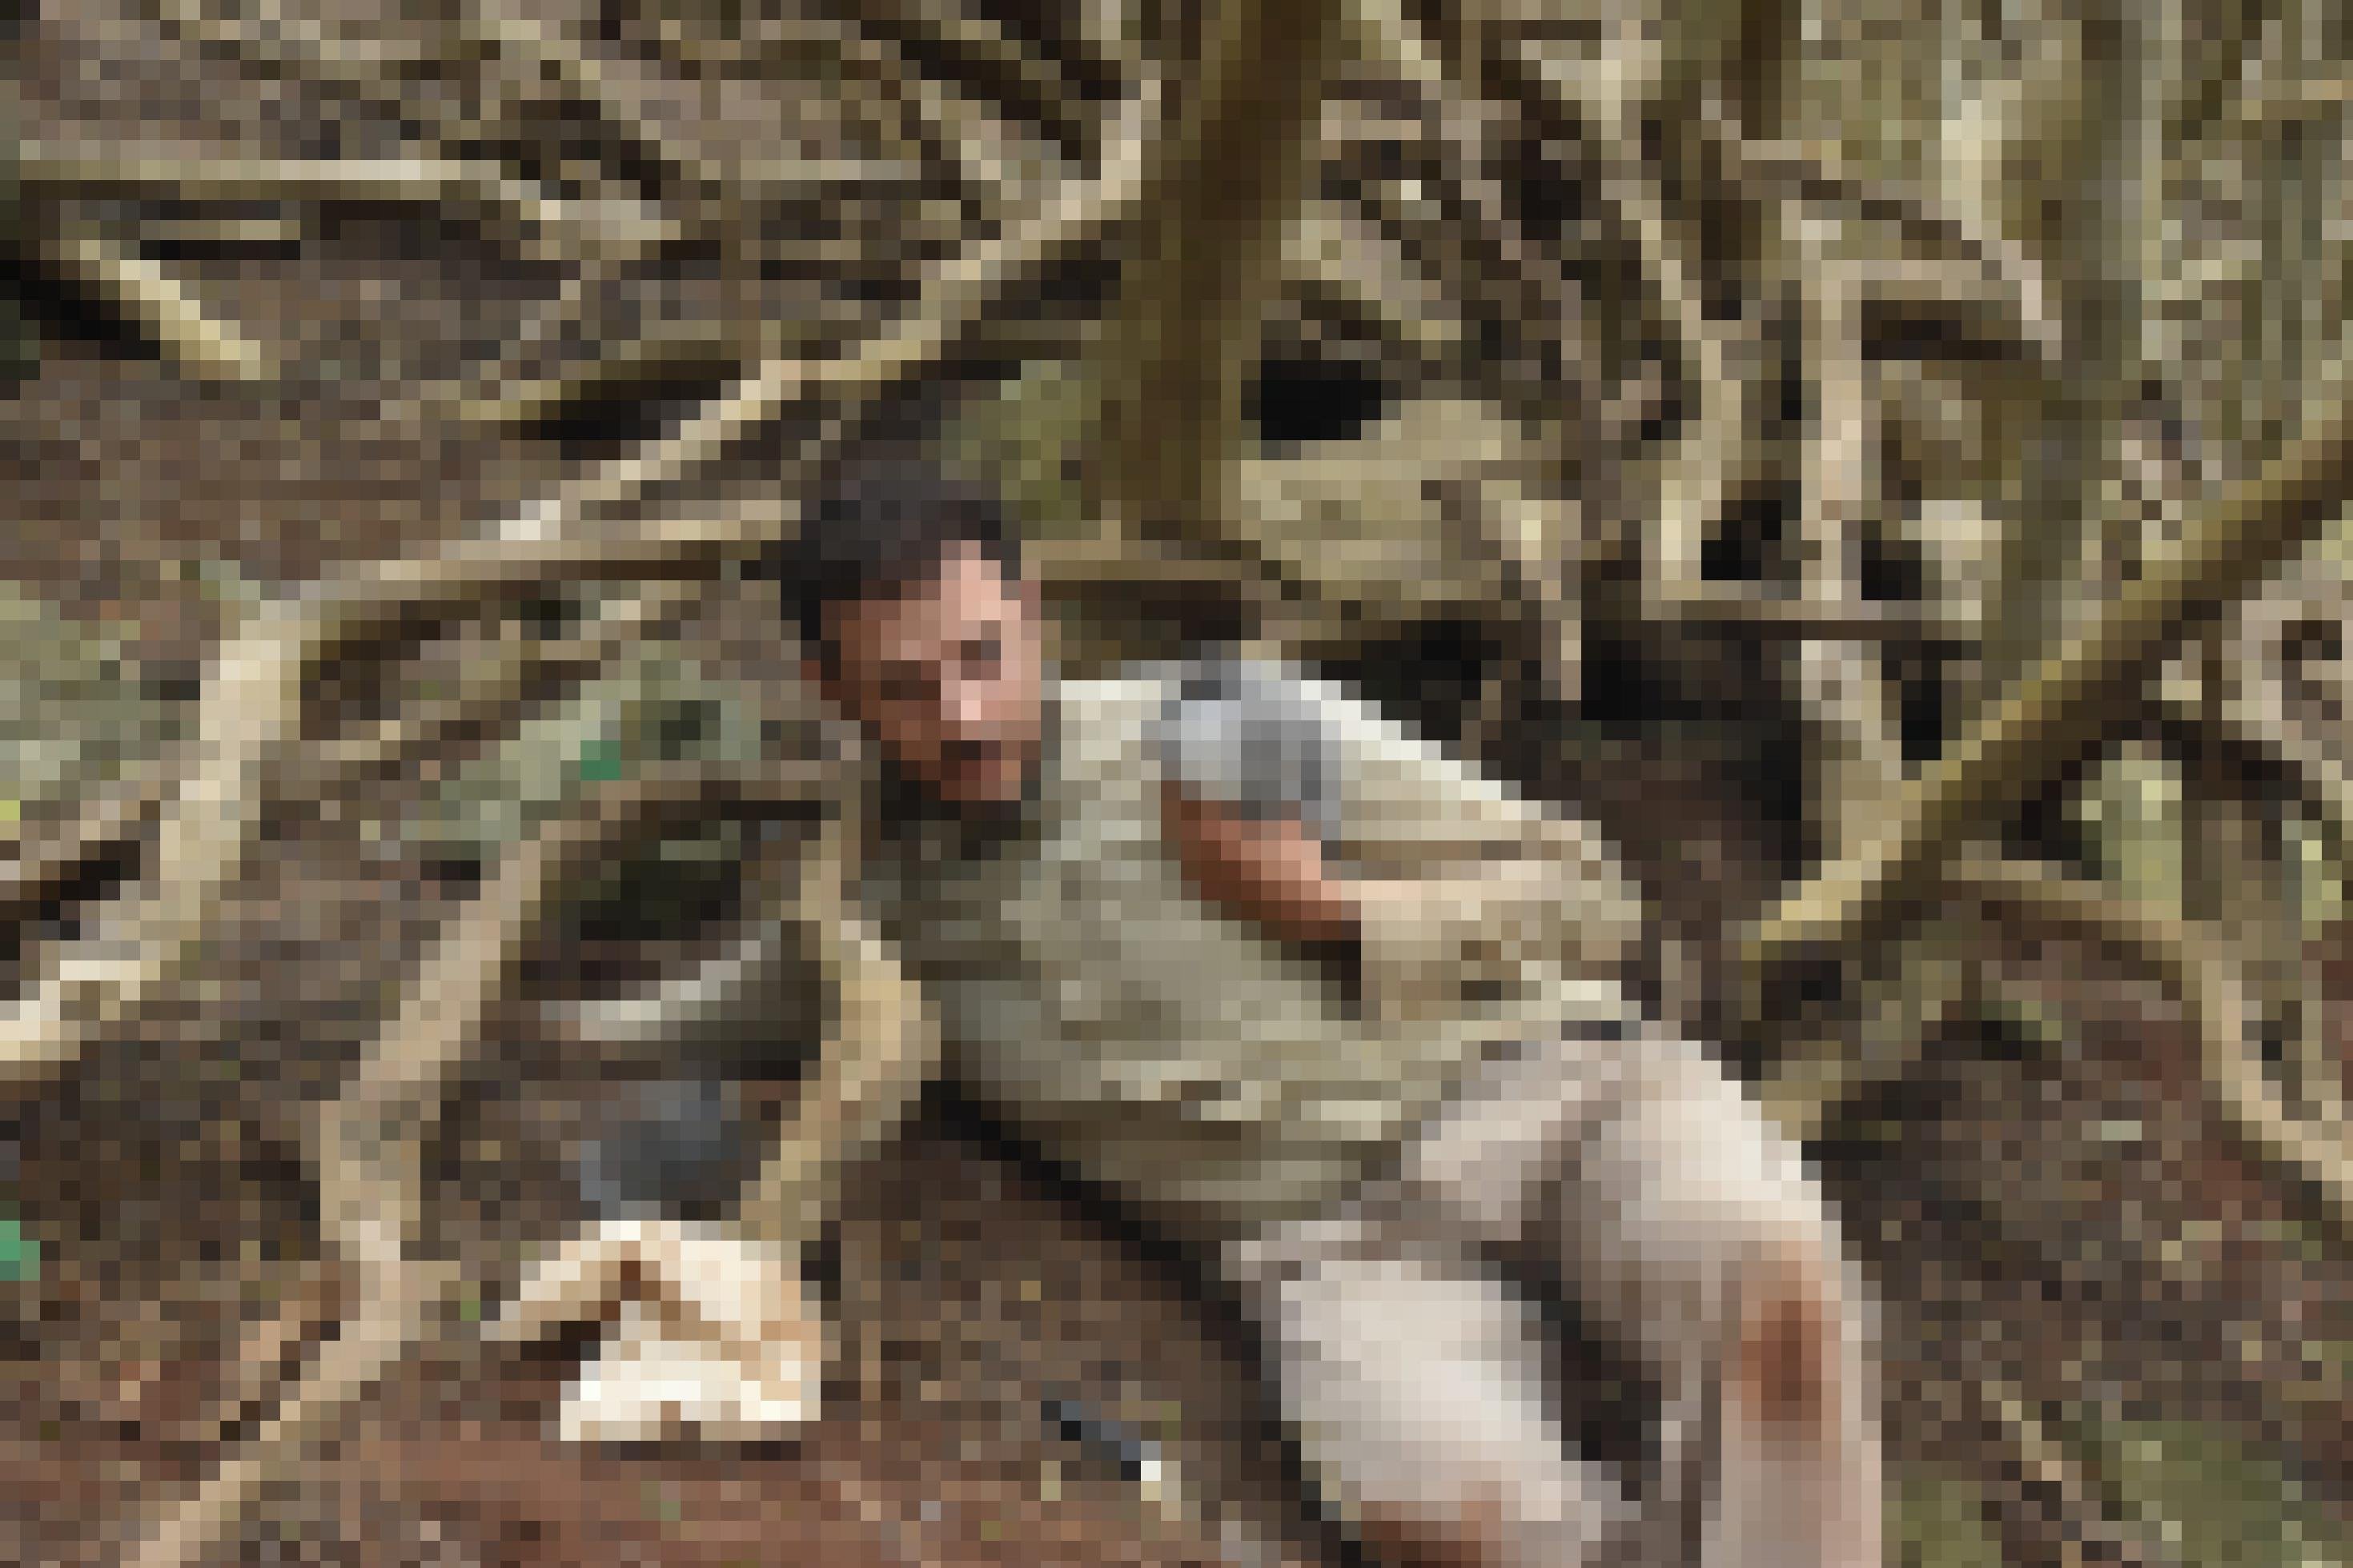 Foto des Forschers Luke Halpin in dreckiger Outdoor-Kleidung. Er liegt auf dem Boden in freier Natur, hält ein Vogelküken und greift mit dem anderen Arm in ein Loch.